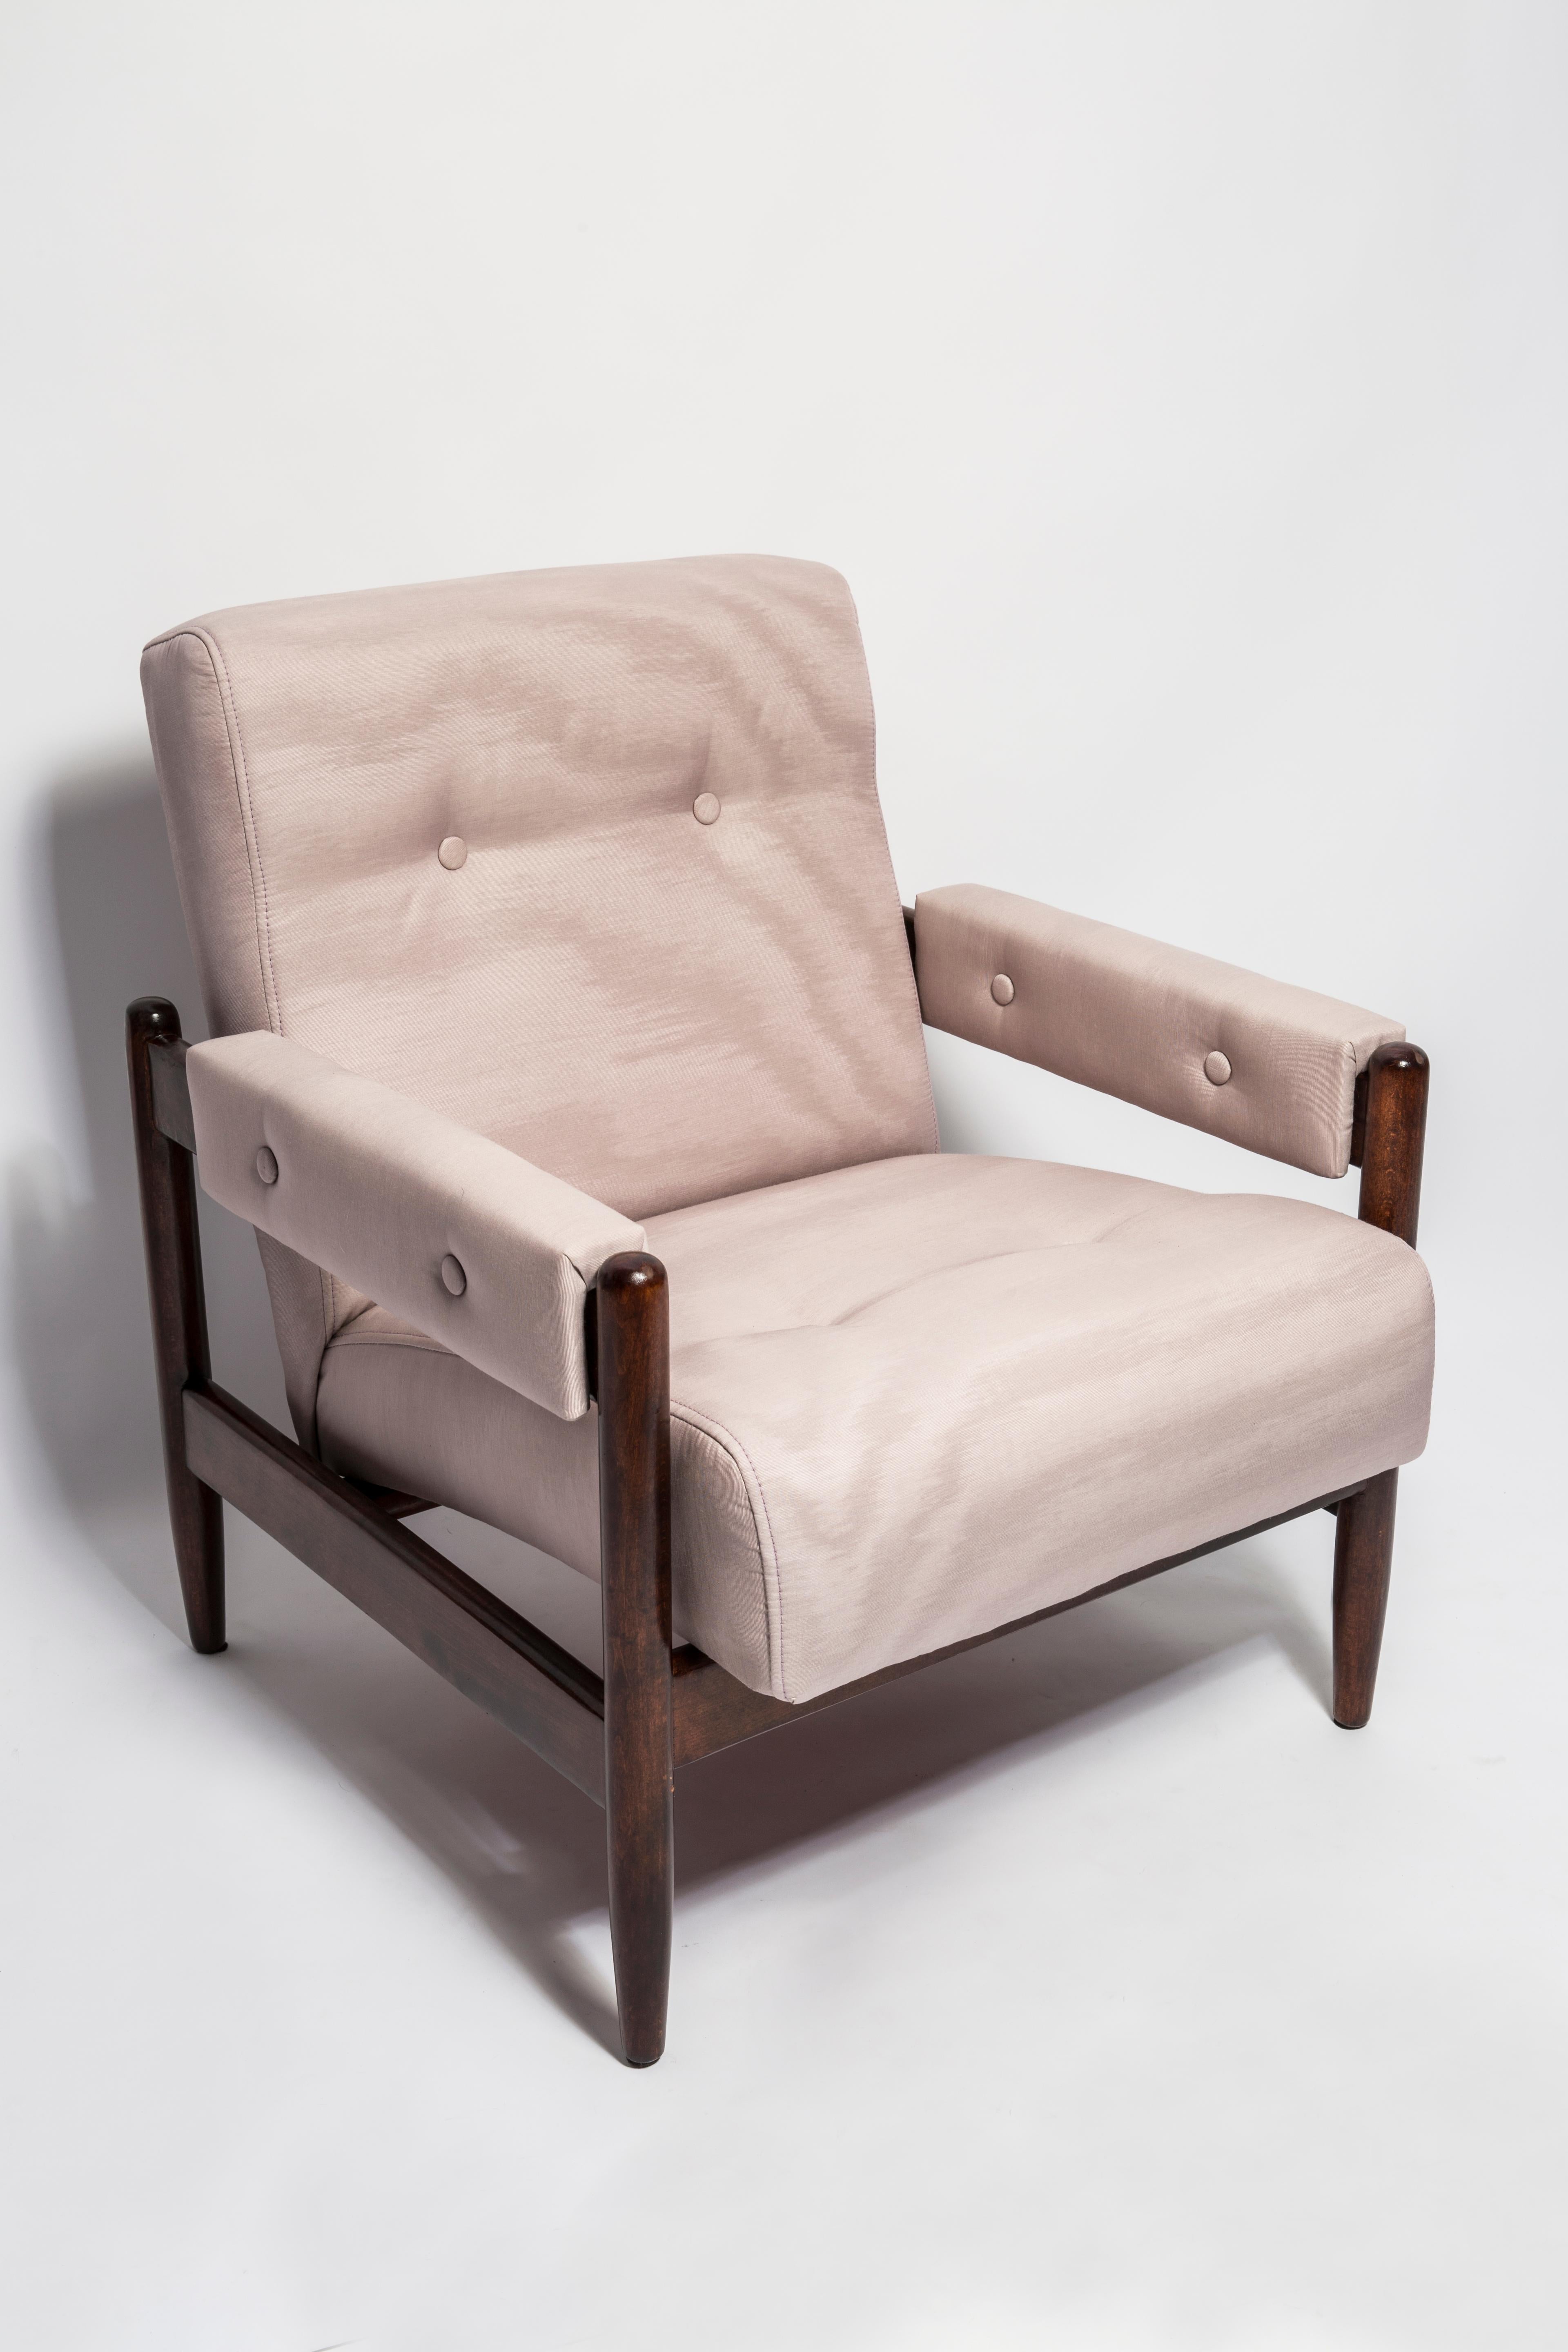 Ein wunderschöner Sessel, der in den 1960er Jahren in Polen hergestellt wurde. Stabiles Design der Möbel und ein bequemer Sitz. Möbel nach vollständiger Renovierung der Polsterung, aufgefrischte Holzarbeiten. Das Ganze ist mit hochwertigem, angenehm